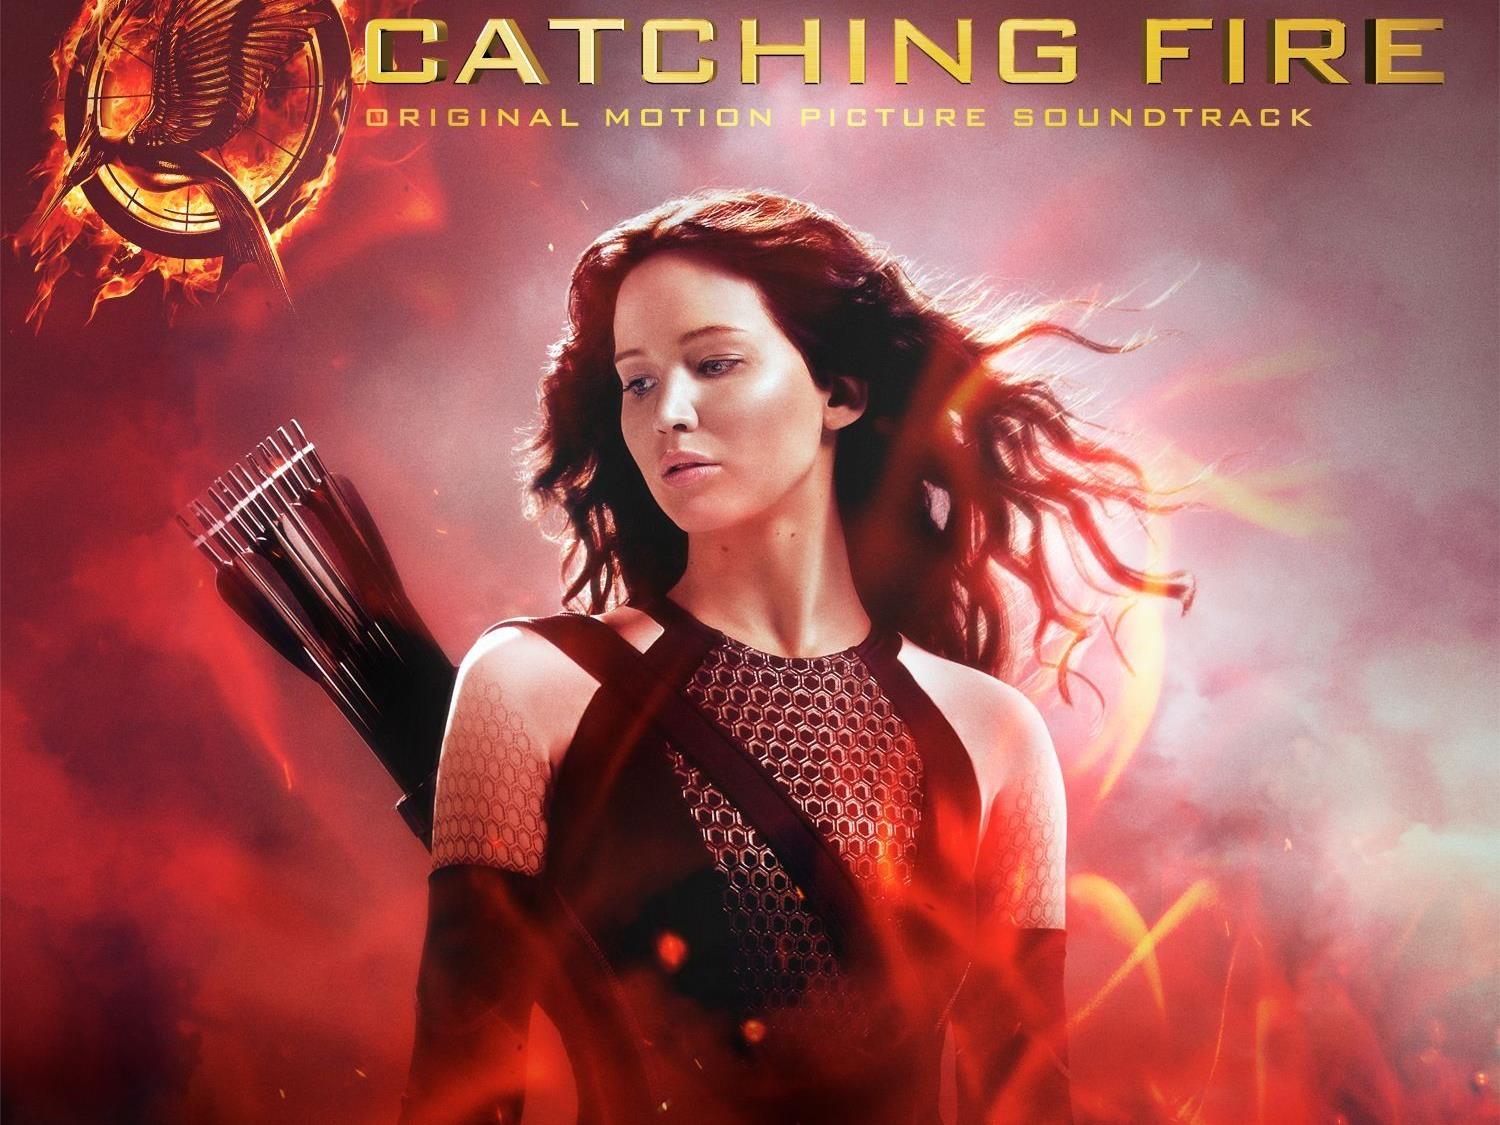 Der Soundtrack zu "Catching Fire" zeigt sich vielseitig.